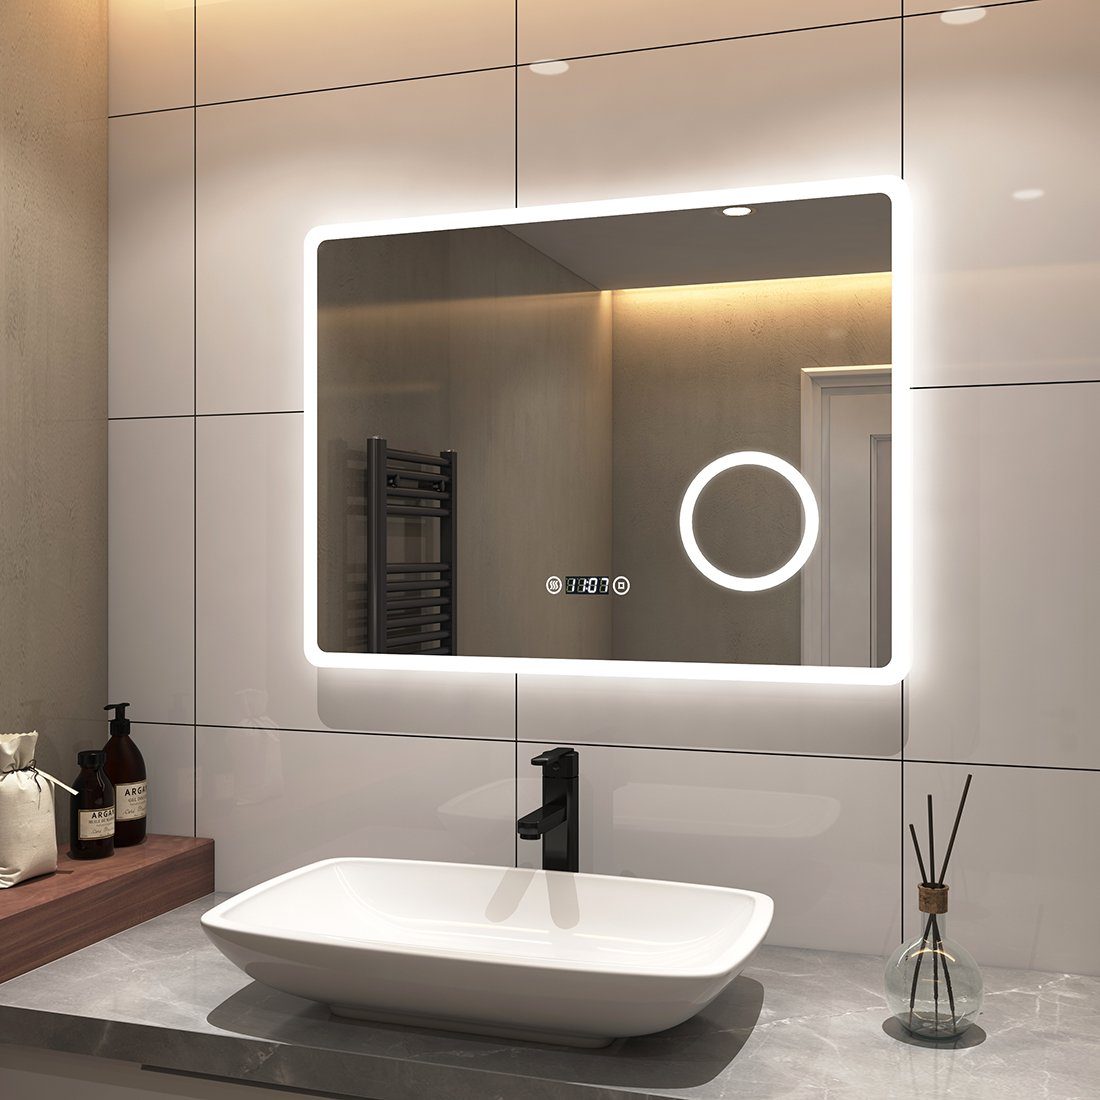 S'AFIELINA Badspiegel Badspiegel Beleuchtung 54 Rasierspiegel Energiesparend, Touchschalter,Uhr,Beschlagfrei,3-fach mit Vergrößerung,IP Wandspiegel